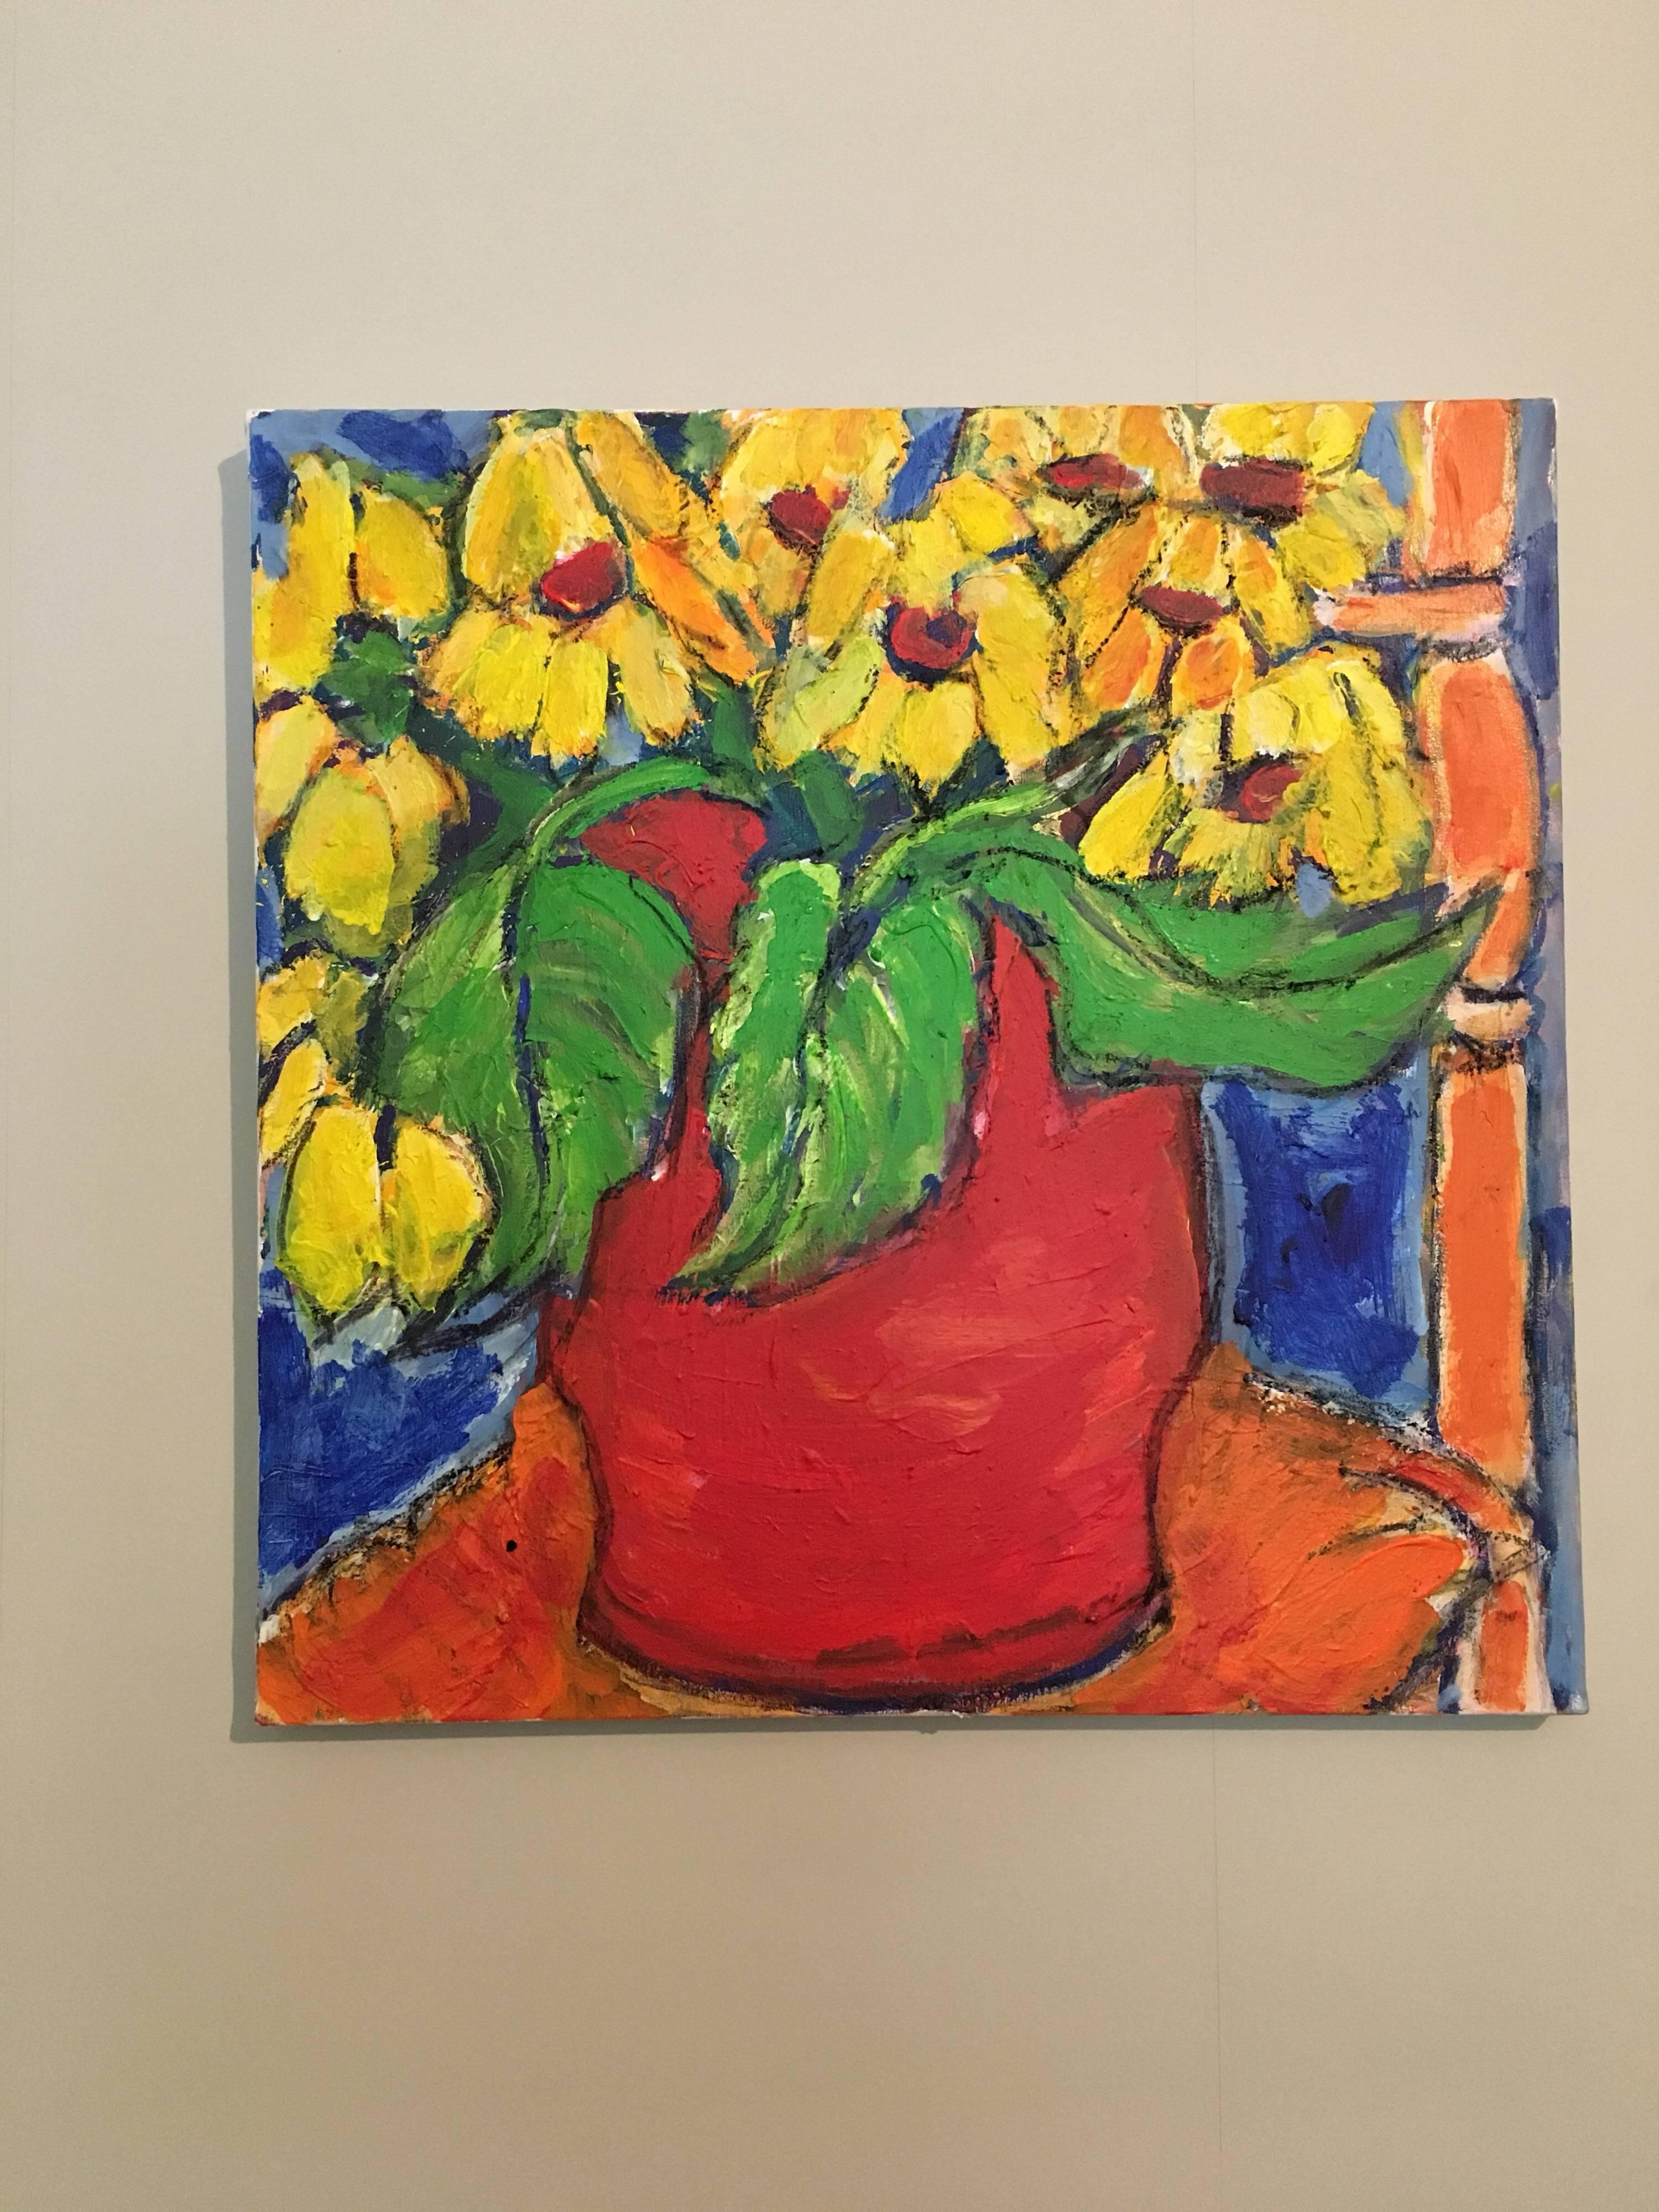 Sonnenblumen
von Pamela Cawley, Britin, 20. Jahrhundert
ölgemälde auf Leinwand, ungerahmt

leinwand: 23,5 x 23,5 Zoll 

Beeindruckendes originales impressionistisches Ölgemälde der britischen Künstlerin Pamela Cawley aus dem 20. Das Werk hat eine